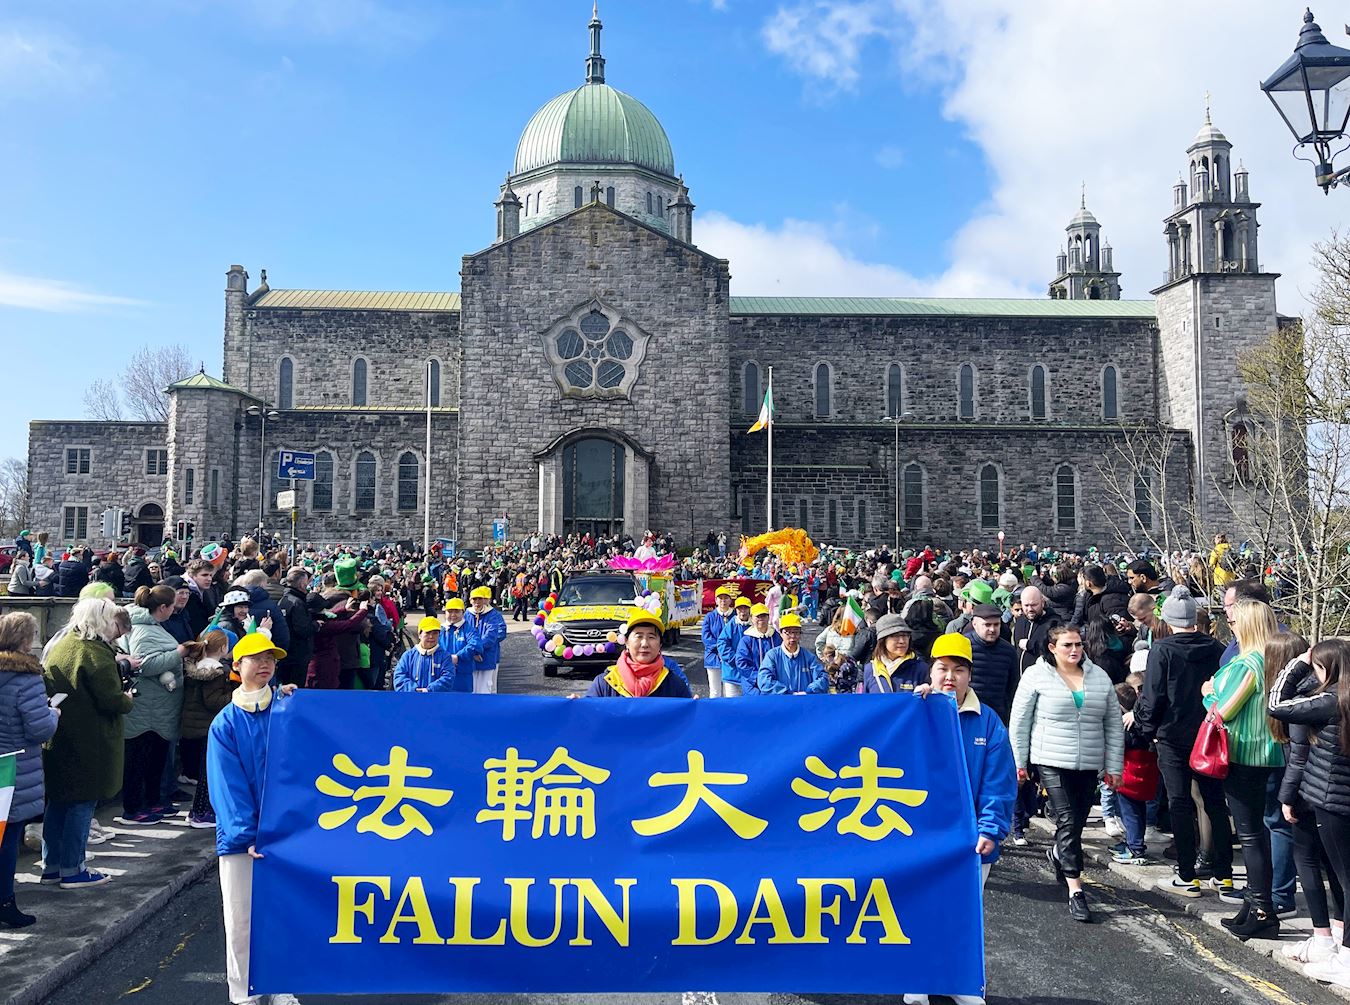 Image for article Irlandia: Falun Dafa Ditampilkan di Parade Hari St. Patrick di Galway